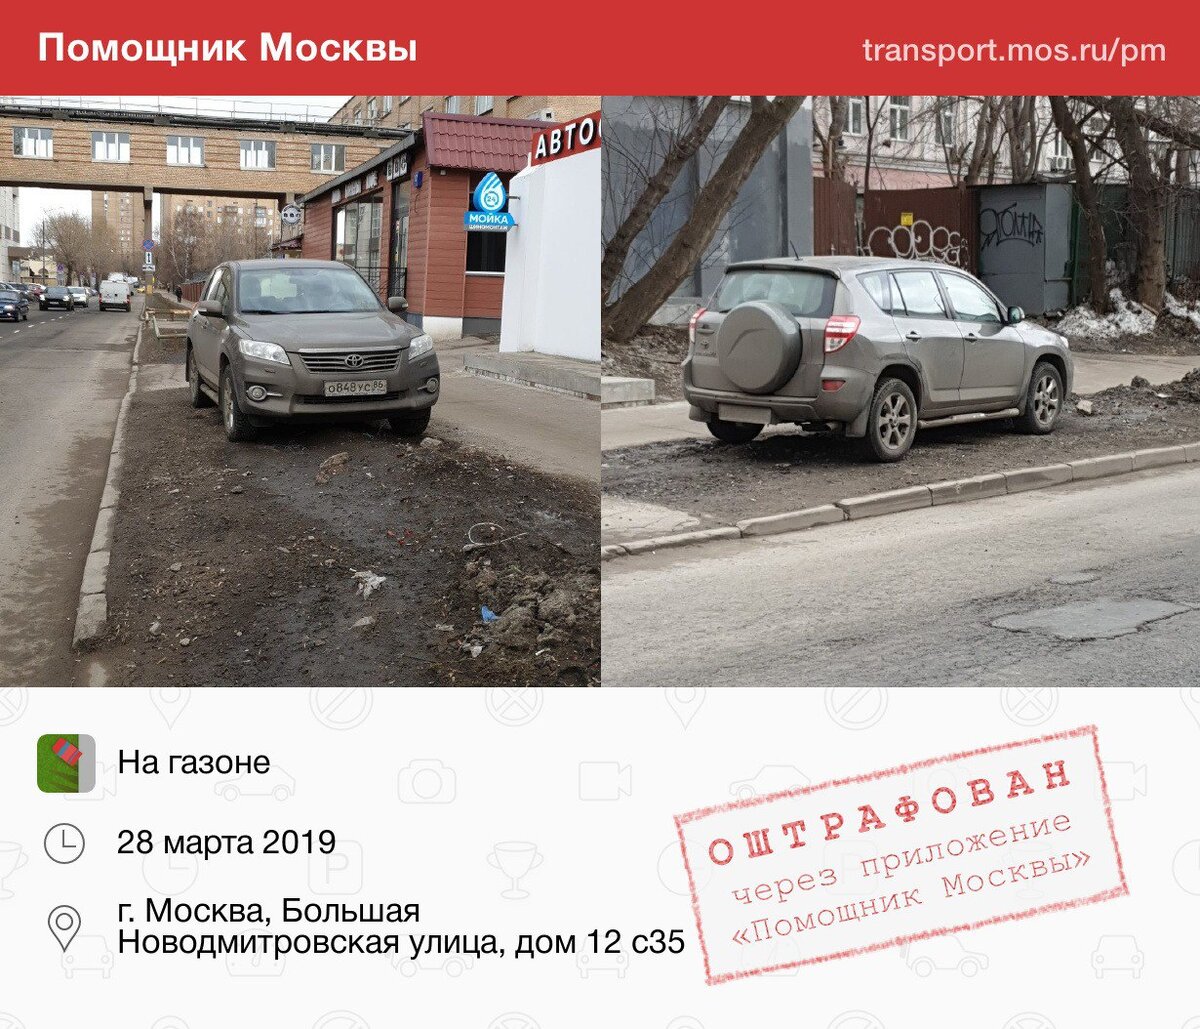 Куда отправить фото неправильной парковки в москве